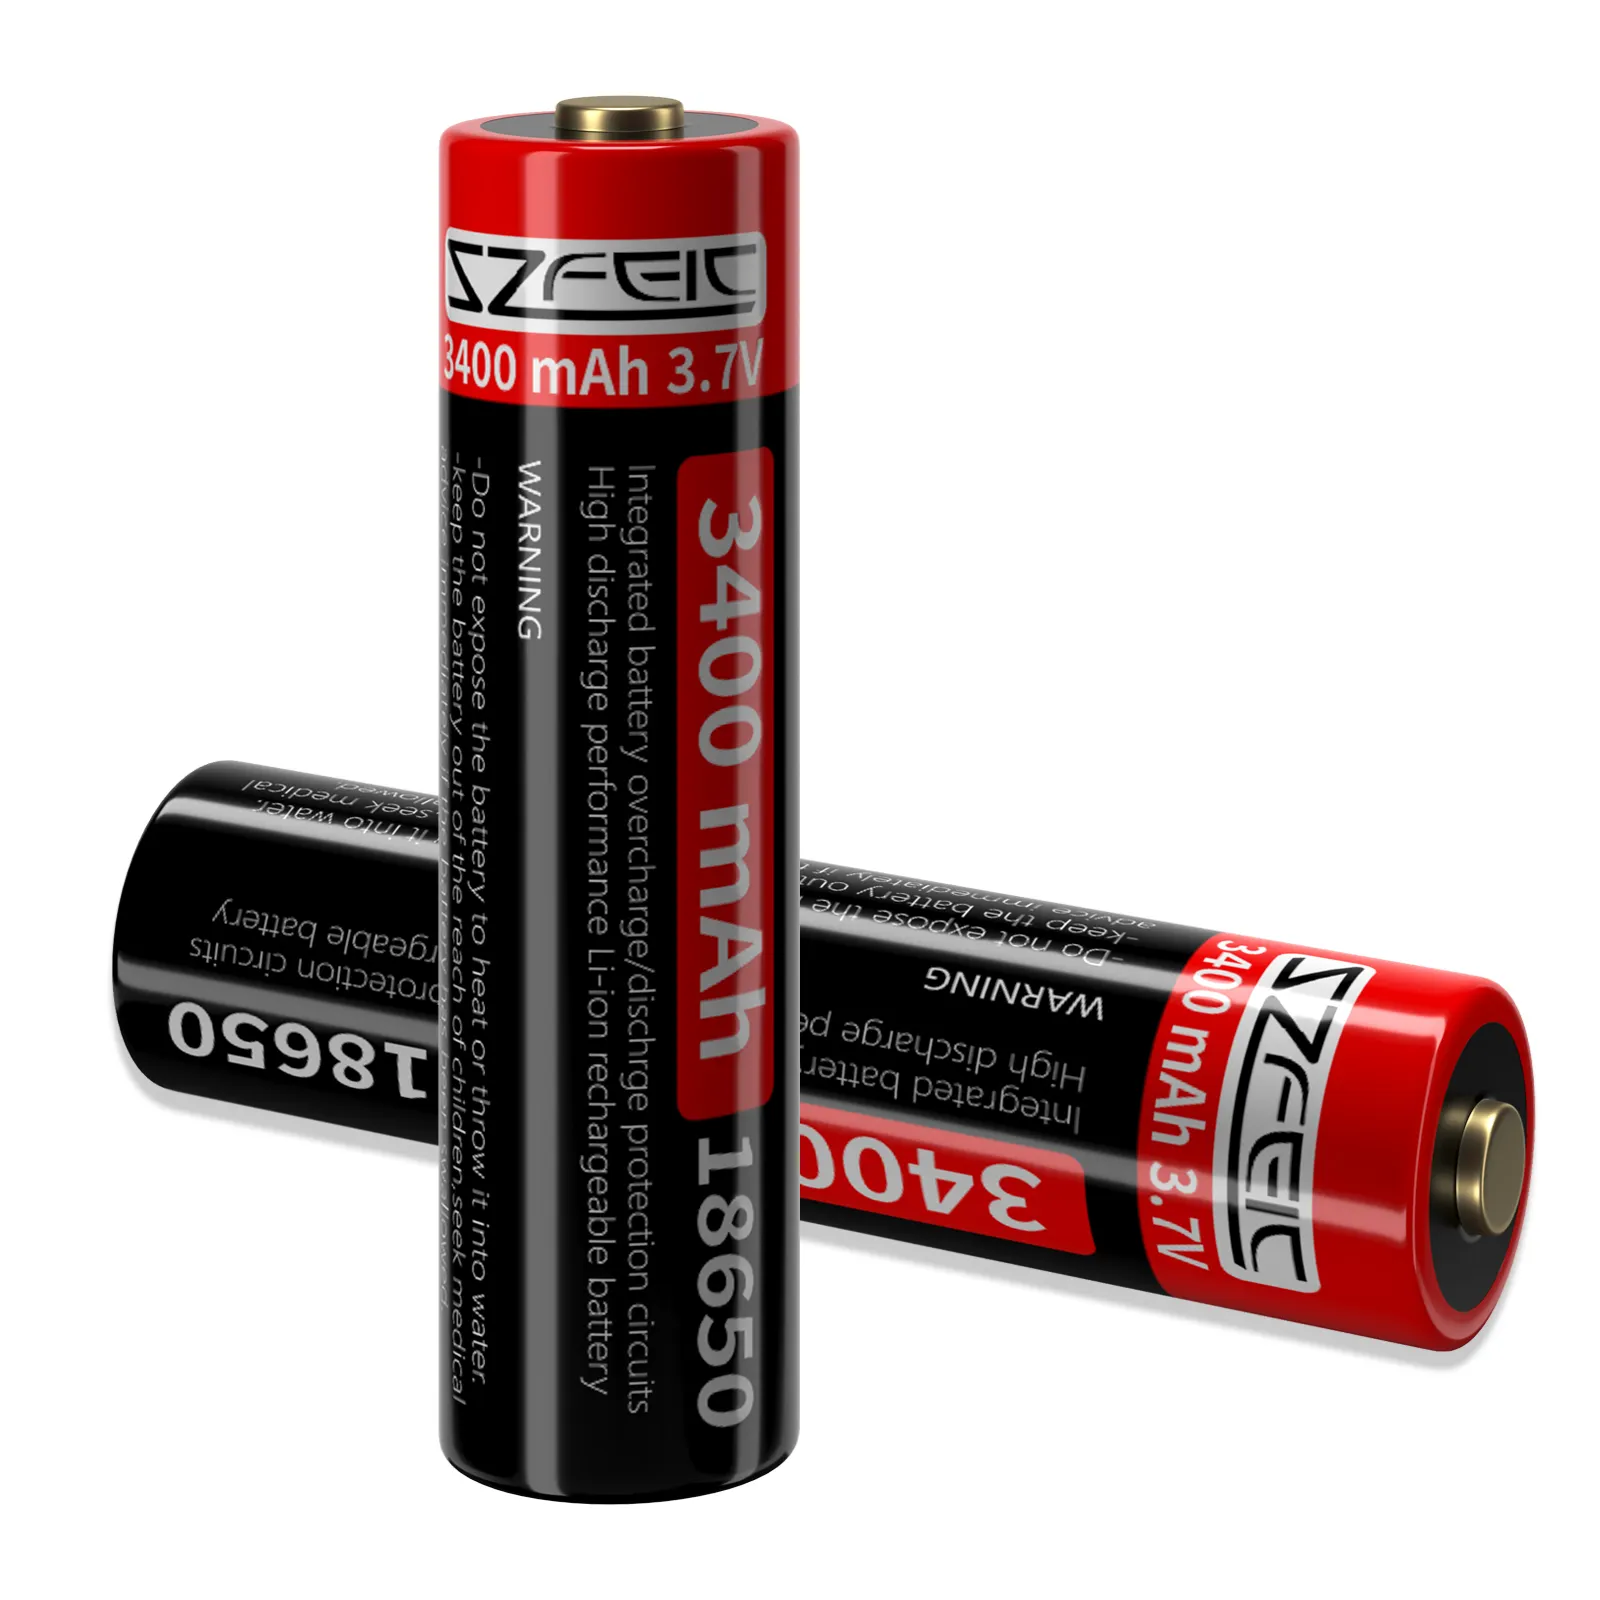 SZFEIC personnalisé en gros 3400mAh 18650 batterie au lithium-ion Rechargeable batterie de Protection contre les courts-circuits/surcharges/décharges